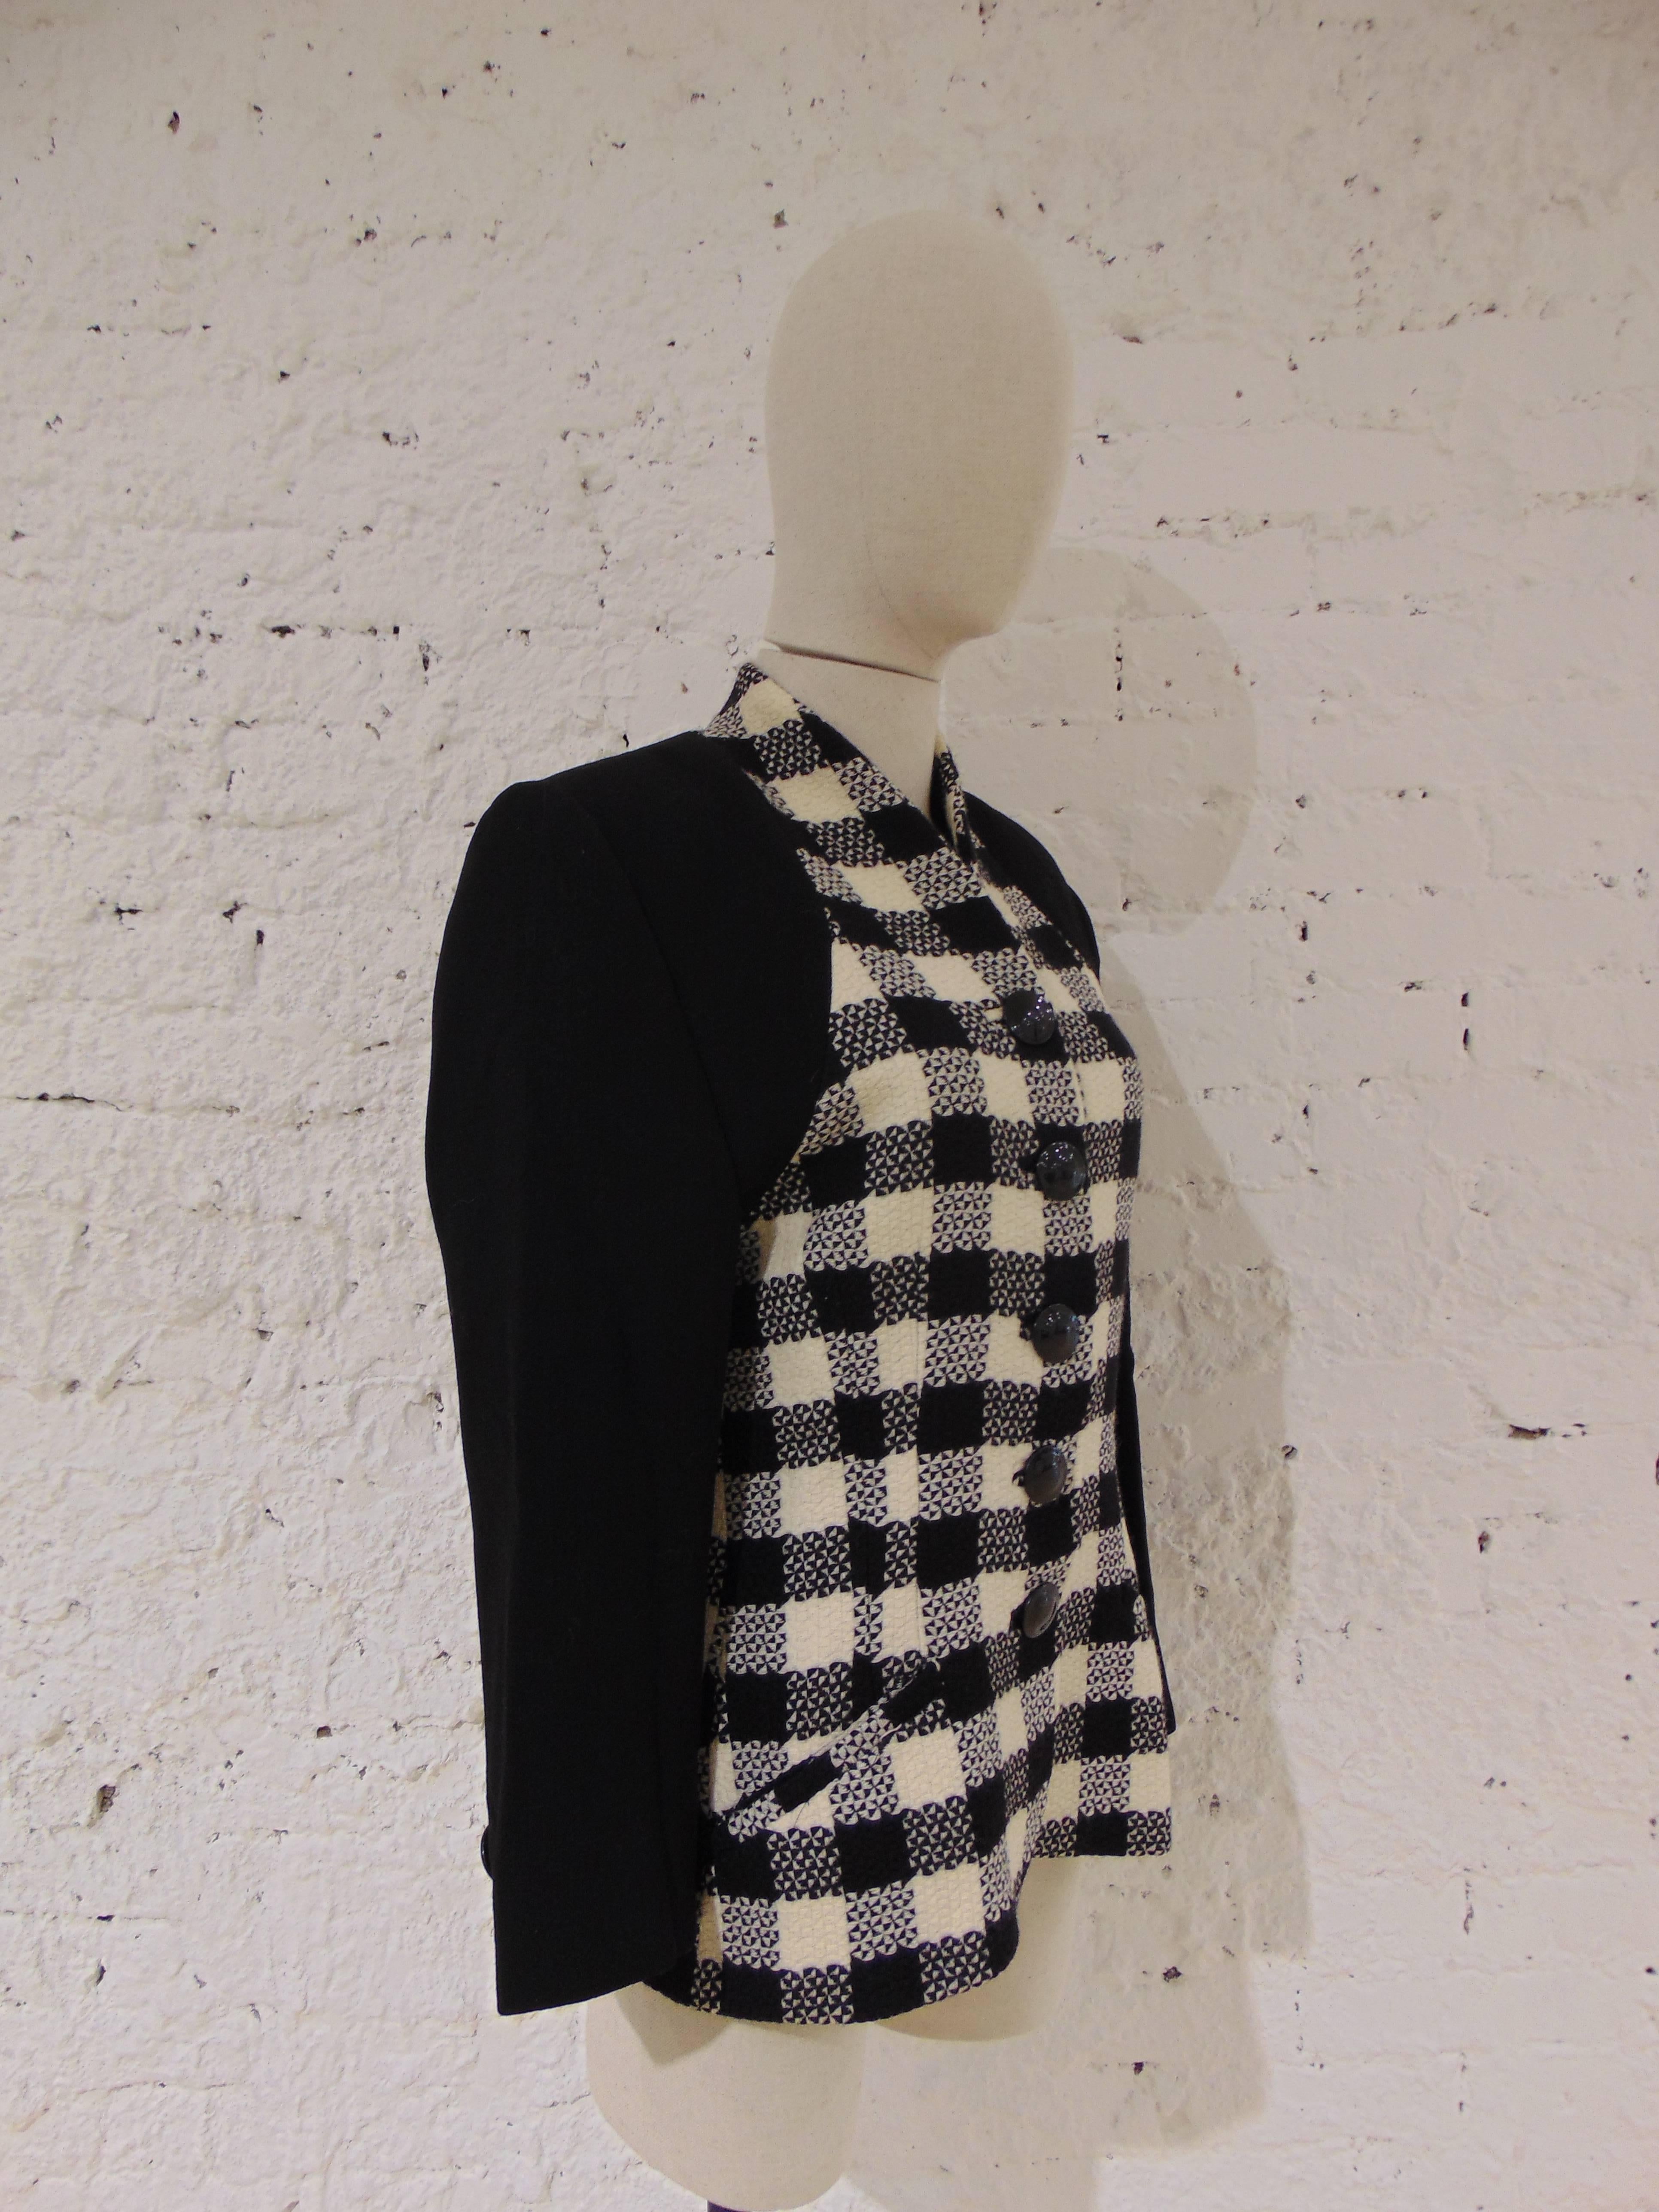 Veste en laine noire et blanche Roccobarocco
totalement fabriqué en italie en taille 48
doublure : Viscose